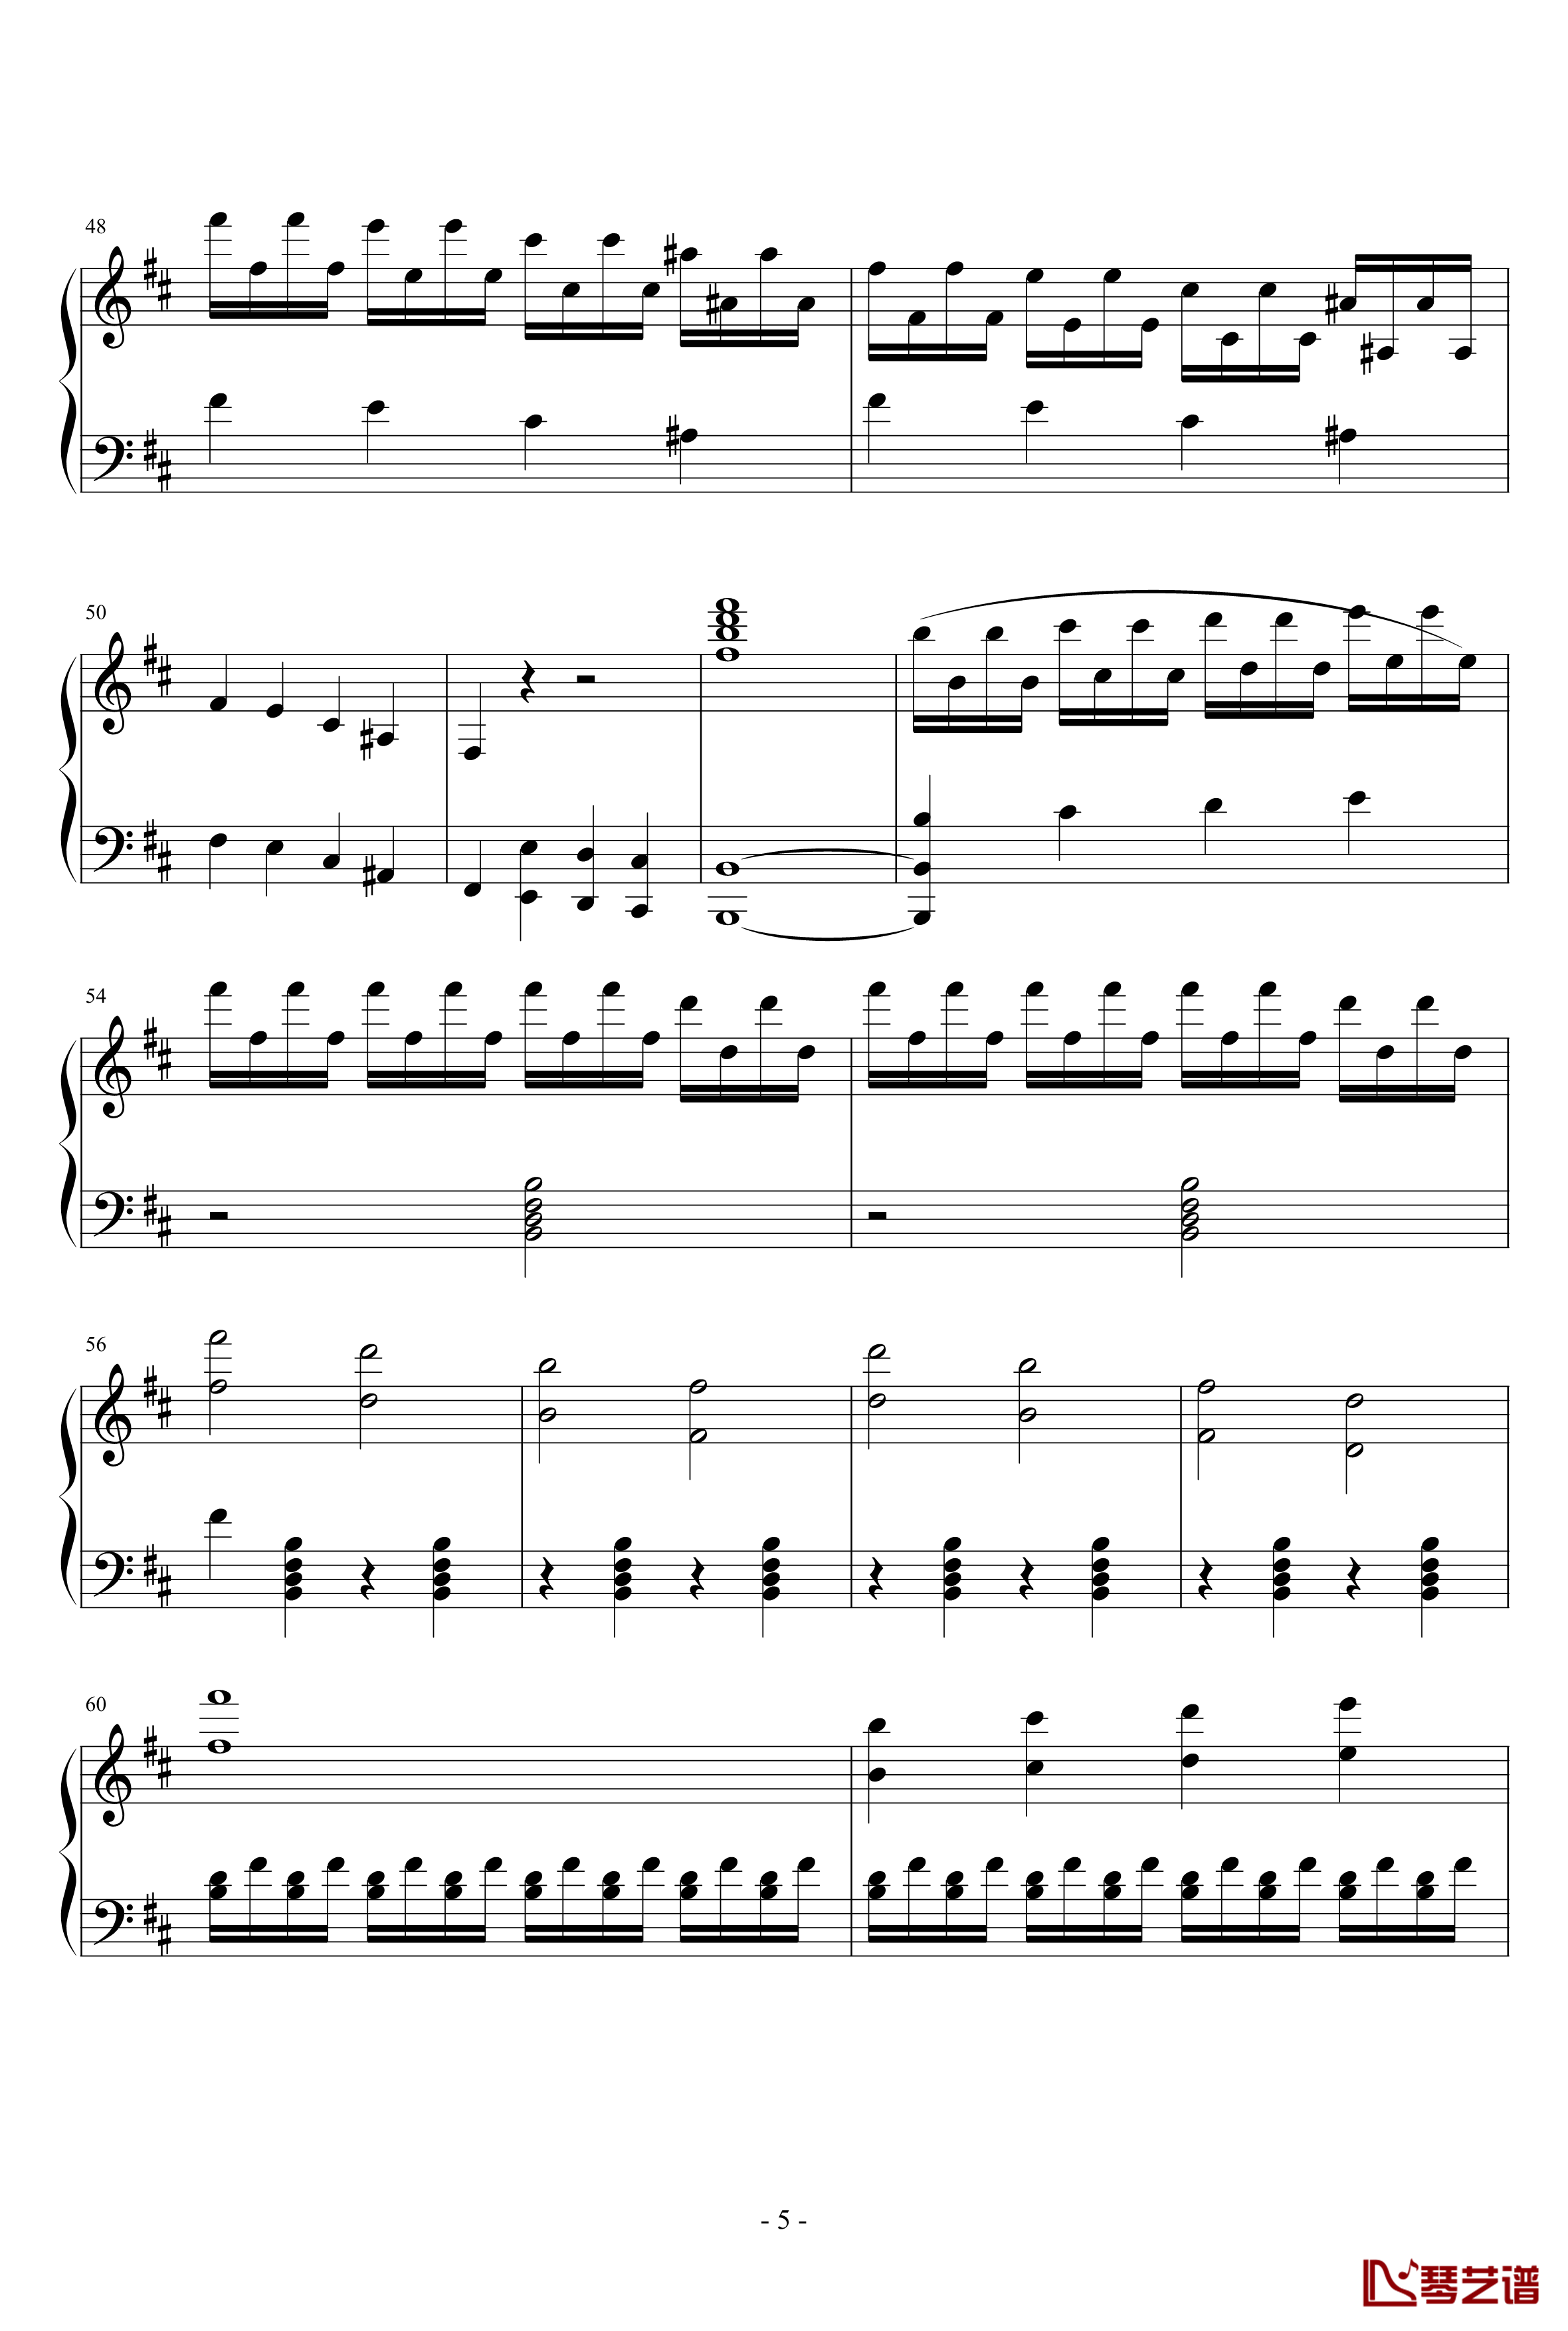 天鹅湖场景旋律钢琴谱-柴科夫斯基-Peter Ilyich Tchaikovsky5